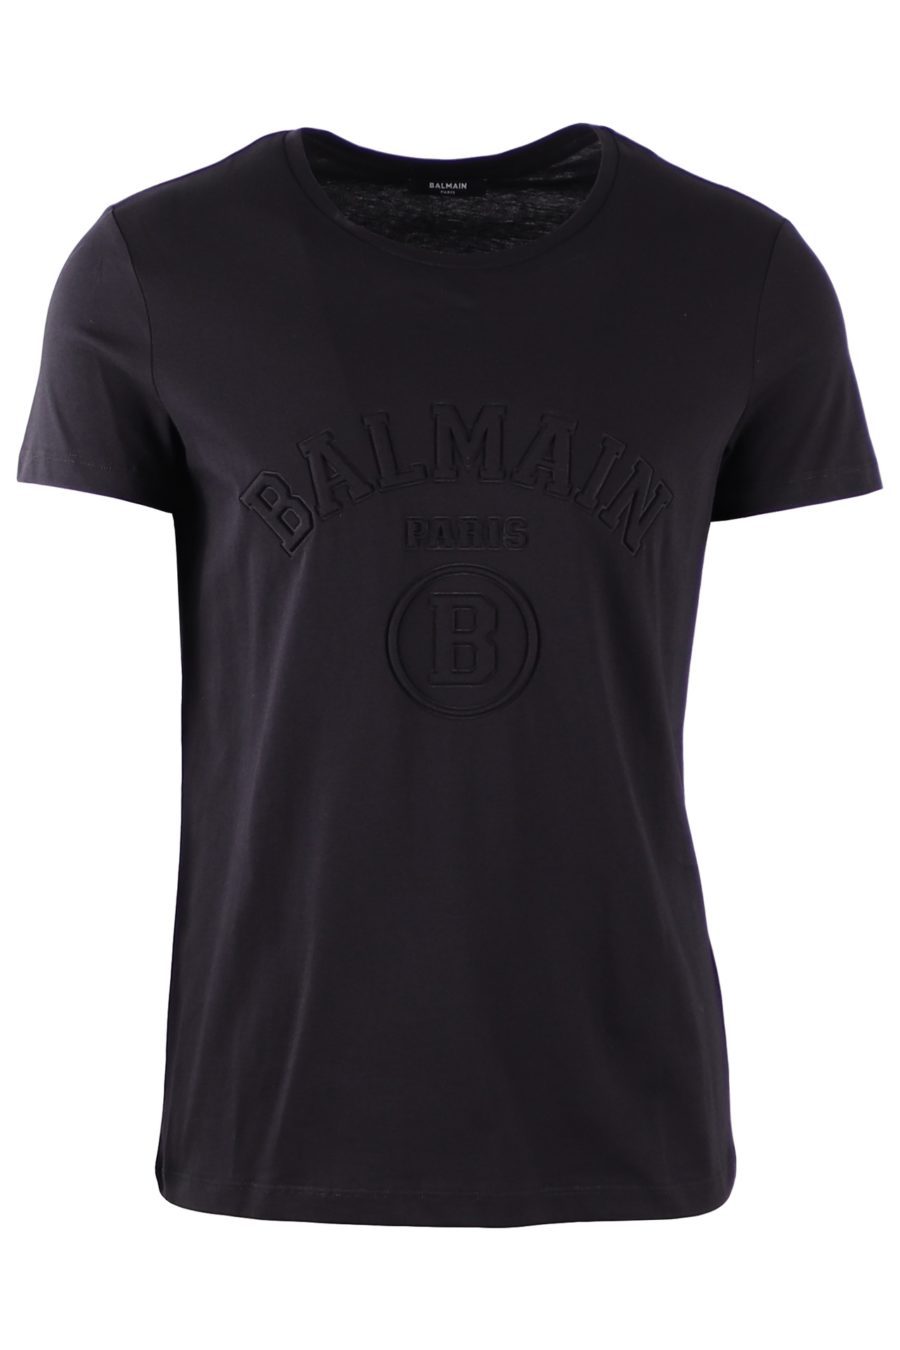 Camiseta Balmain negra con logotipo en relieve - 9f5831a8d5c240af86a7d4ad329e938cf16486b8